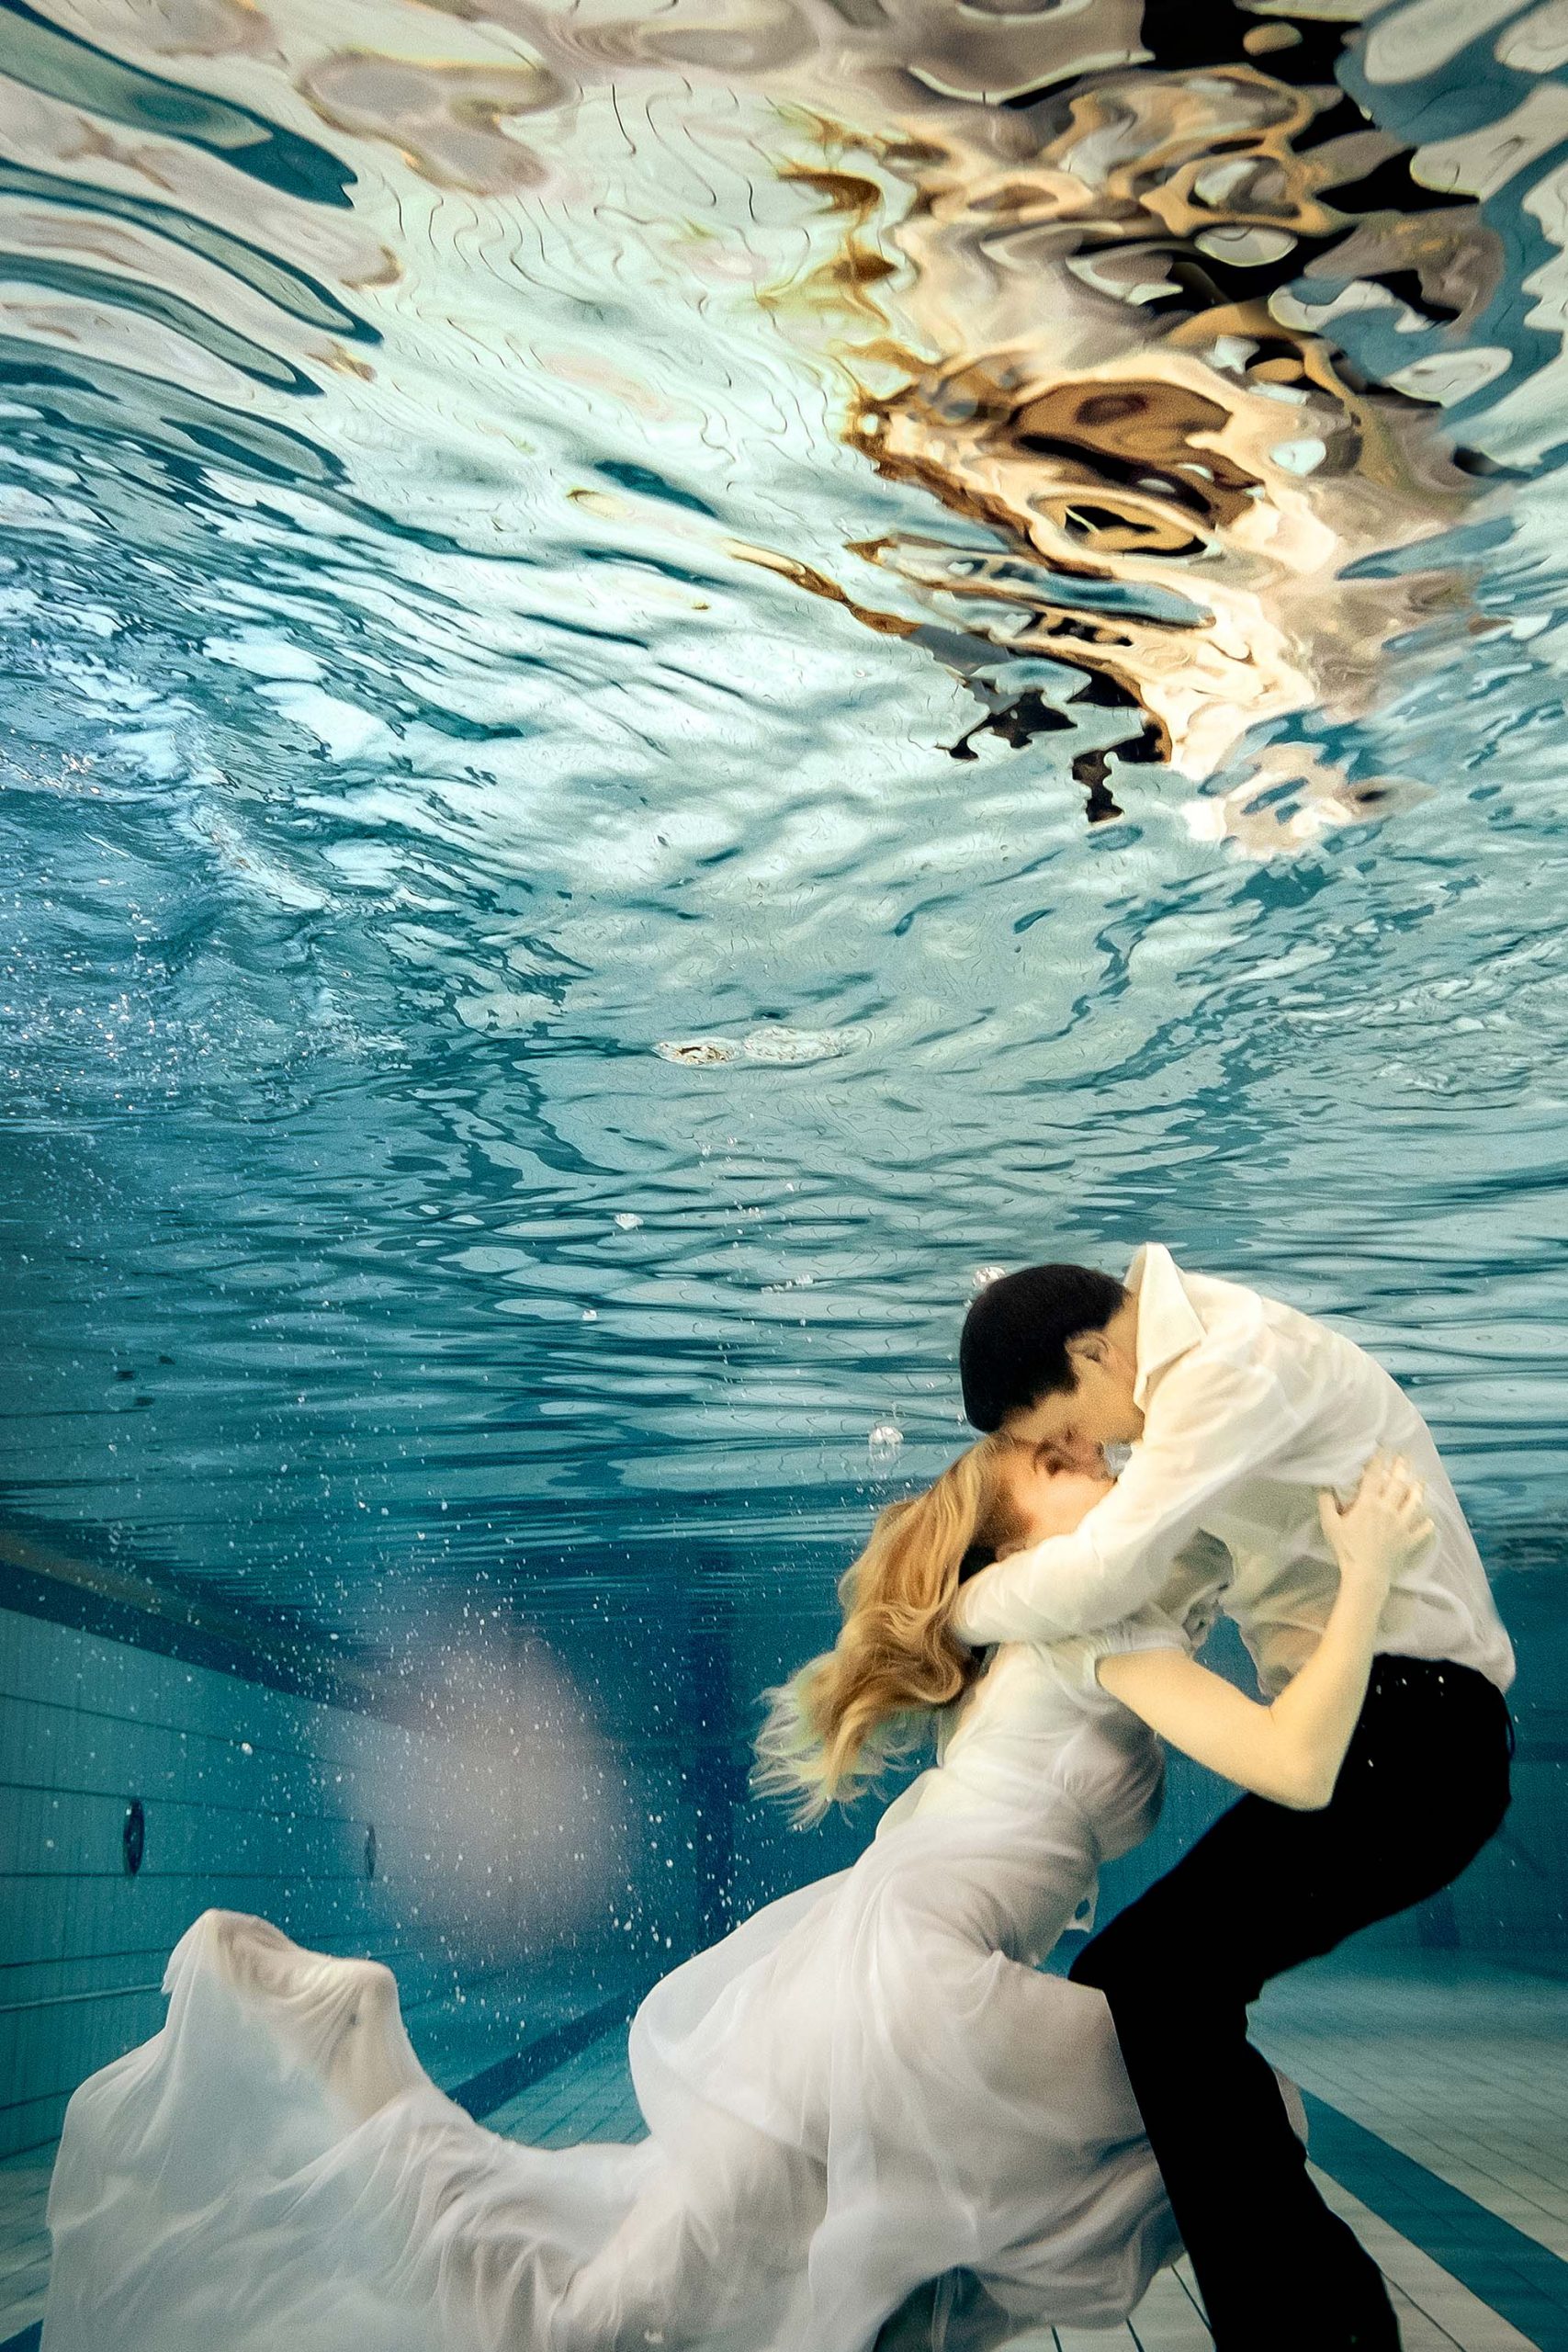 Romeo und Julia umarmen sich unter Wasser.